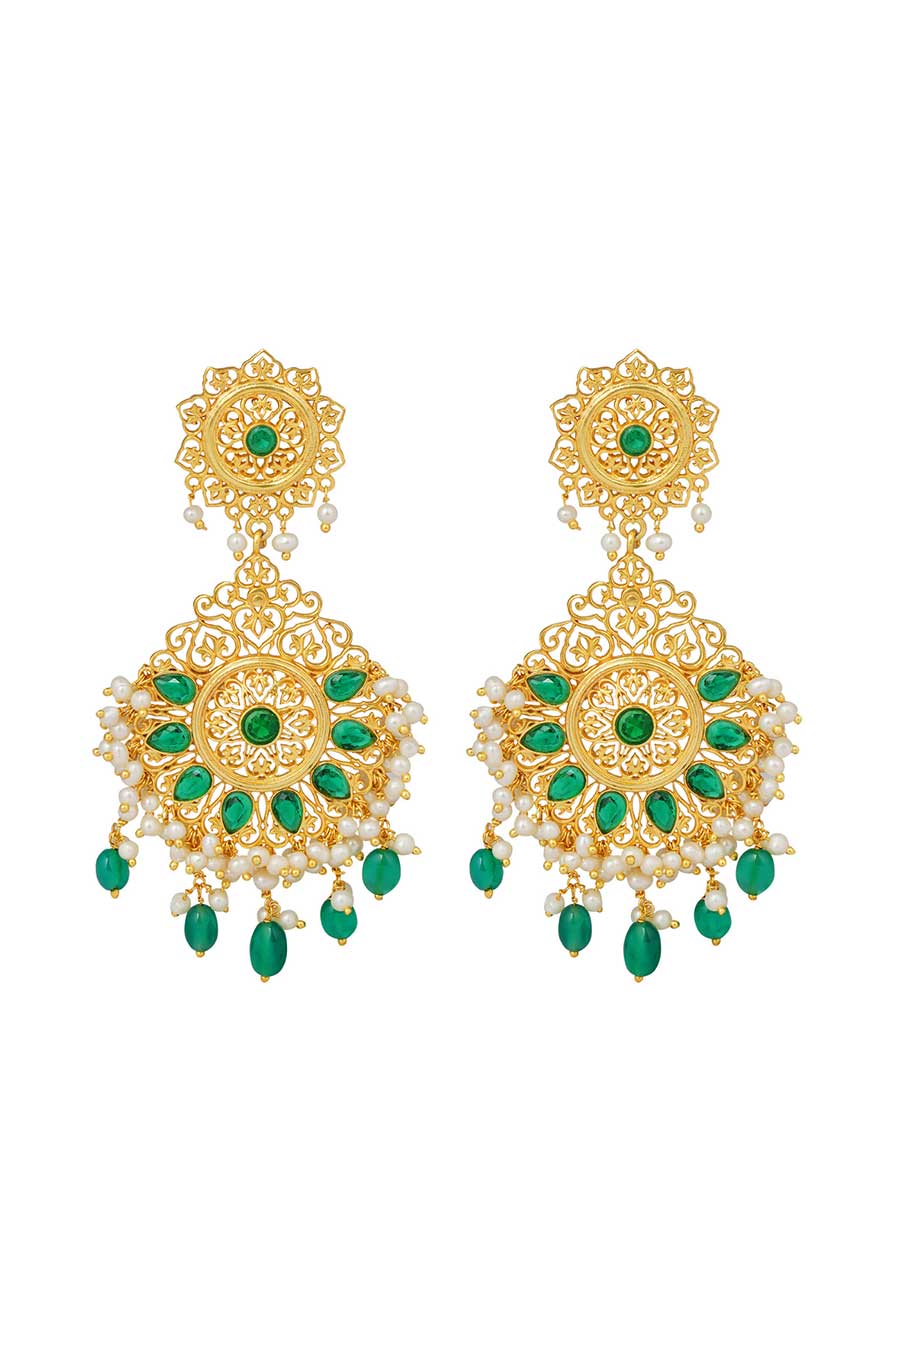 Gul-E-Bahar Gold Plated Dangler Earrings